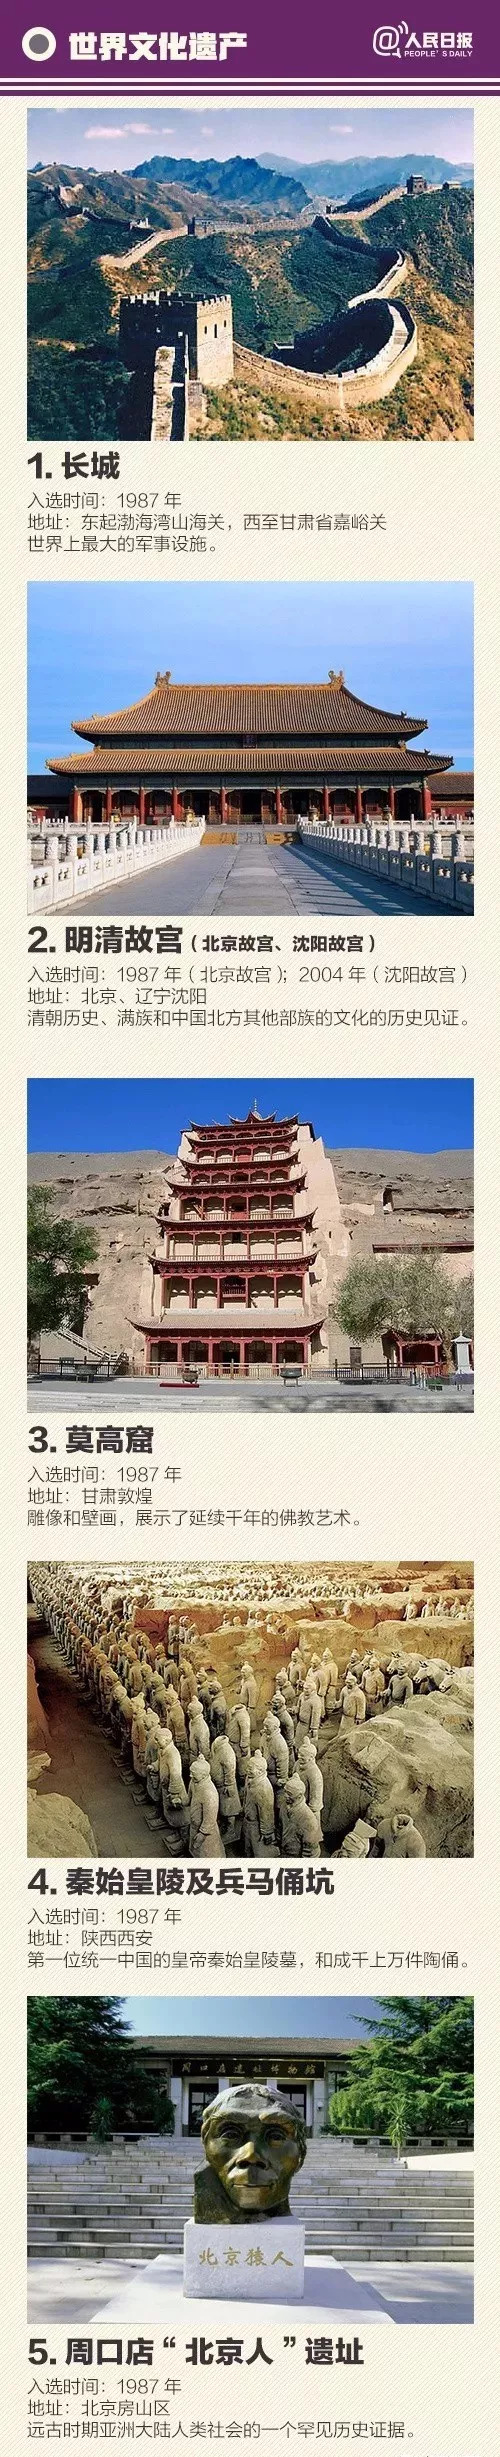 中国"世界级遗产,非物质文化遗产"全名录,世界之美!中国人都要了解下!